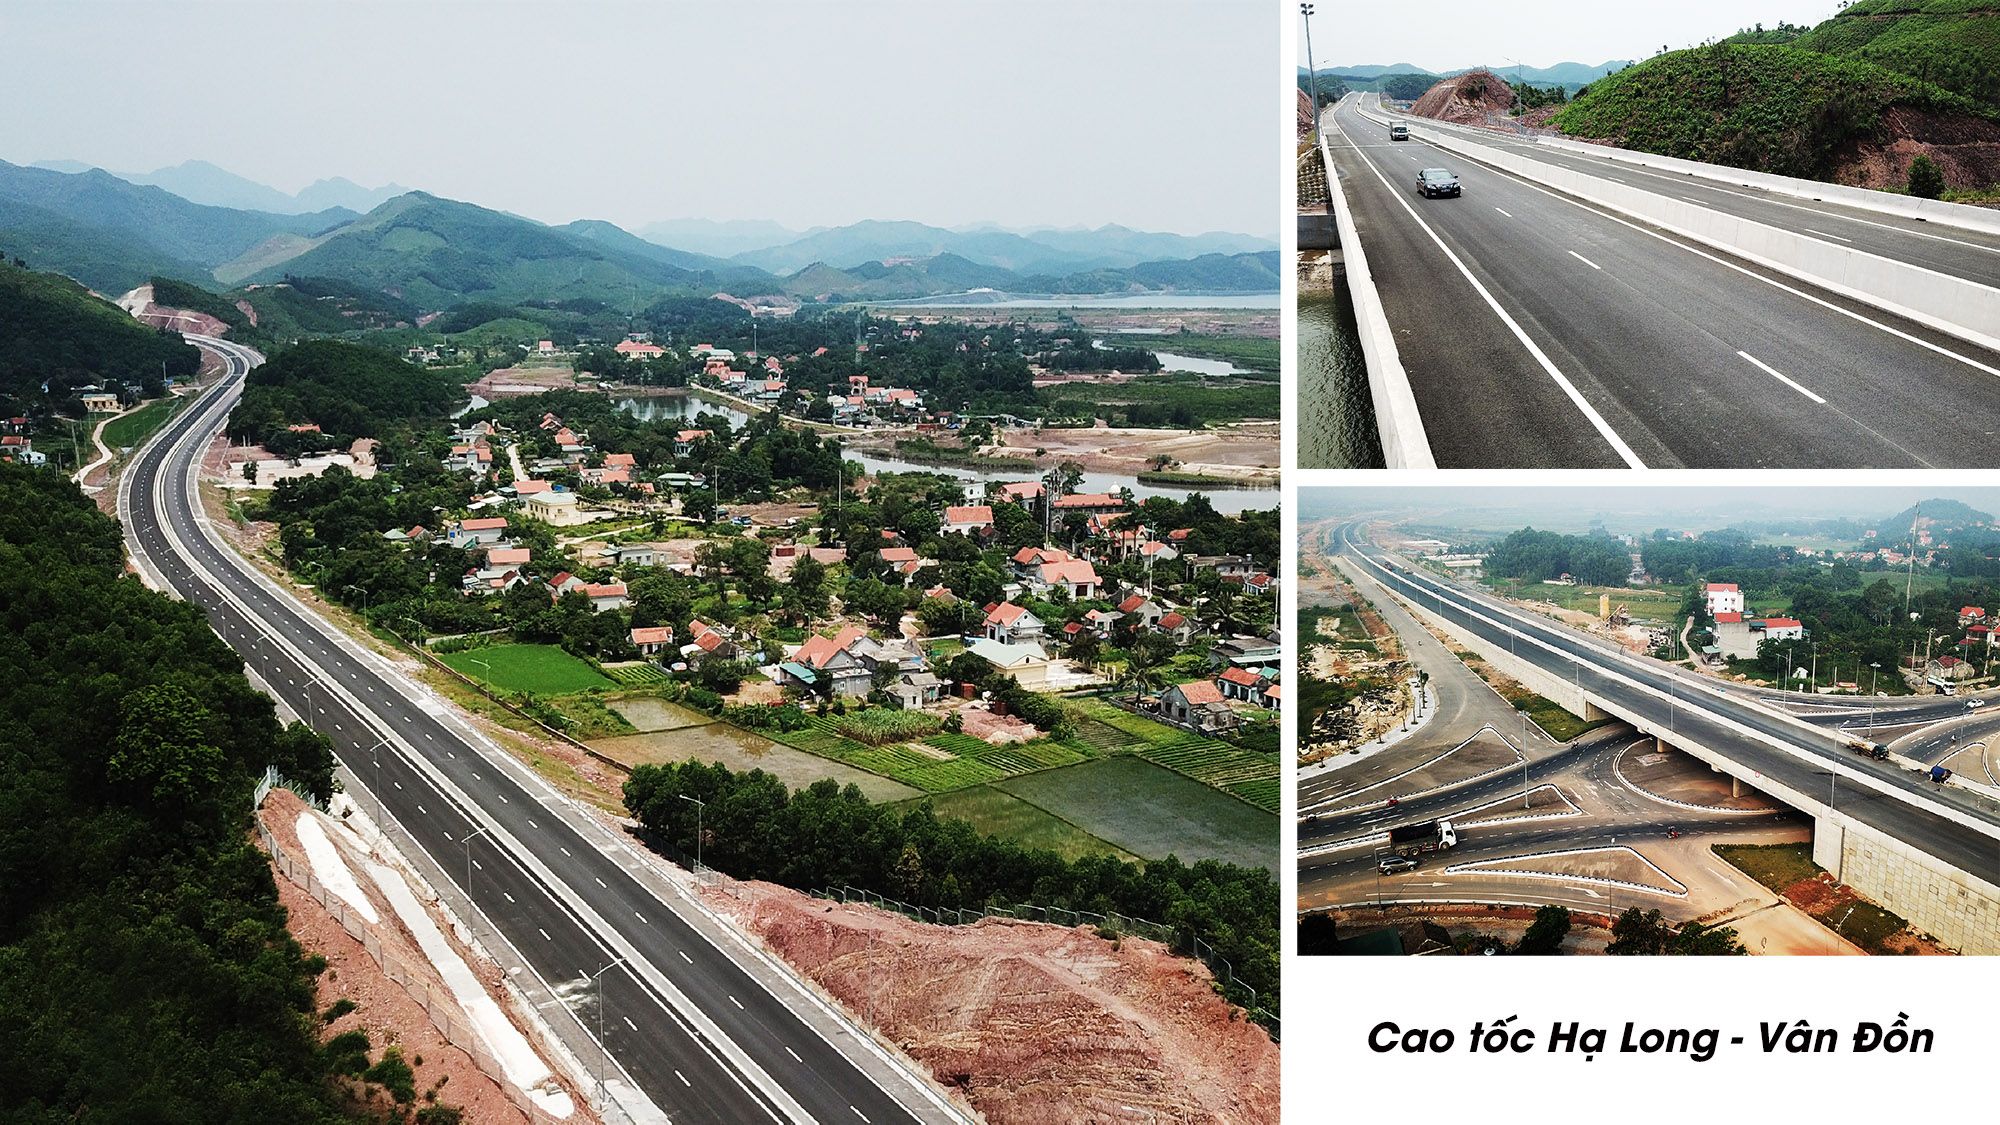 Cao tốc Hạ Long - Vân Đồn là dự án giao thông lớn hiện nay ở Quảng Ninh với tổng vốn đầu tư lên đến 12.000 tỷ đồng. Cao tốc dài 60km, nền đường rộng 25m, vận tốc tối đa 100km/h, dự kiến hoàn thành trong năm 2018.